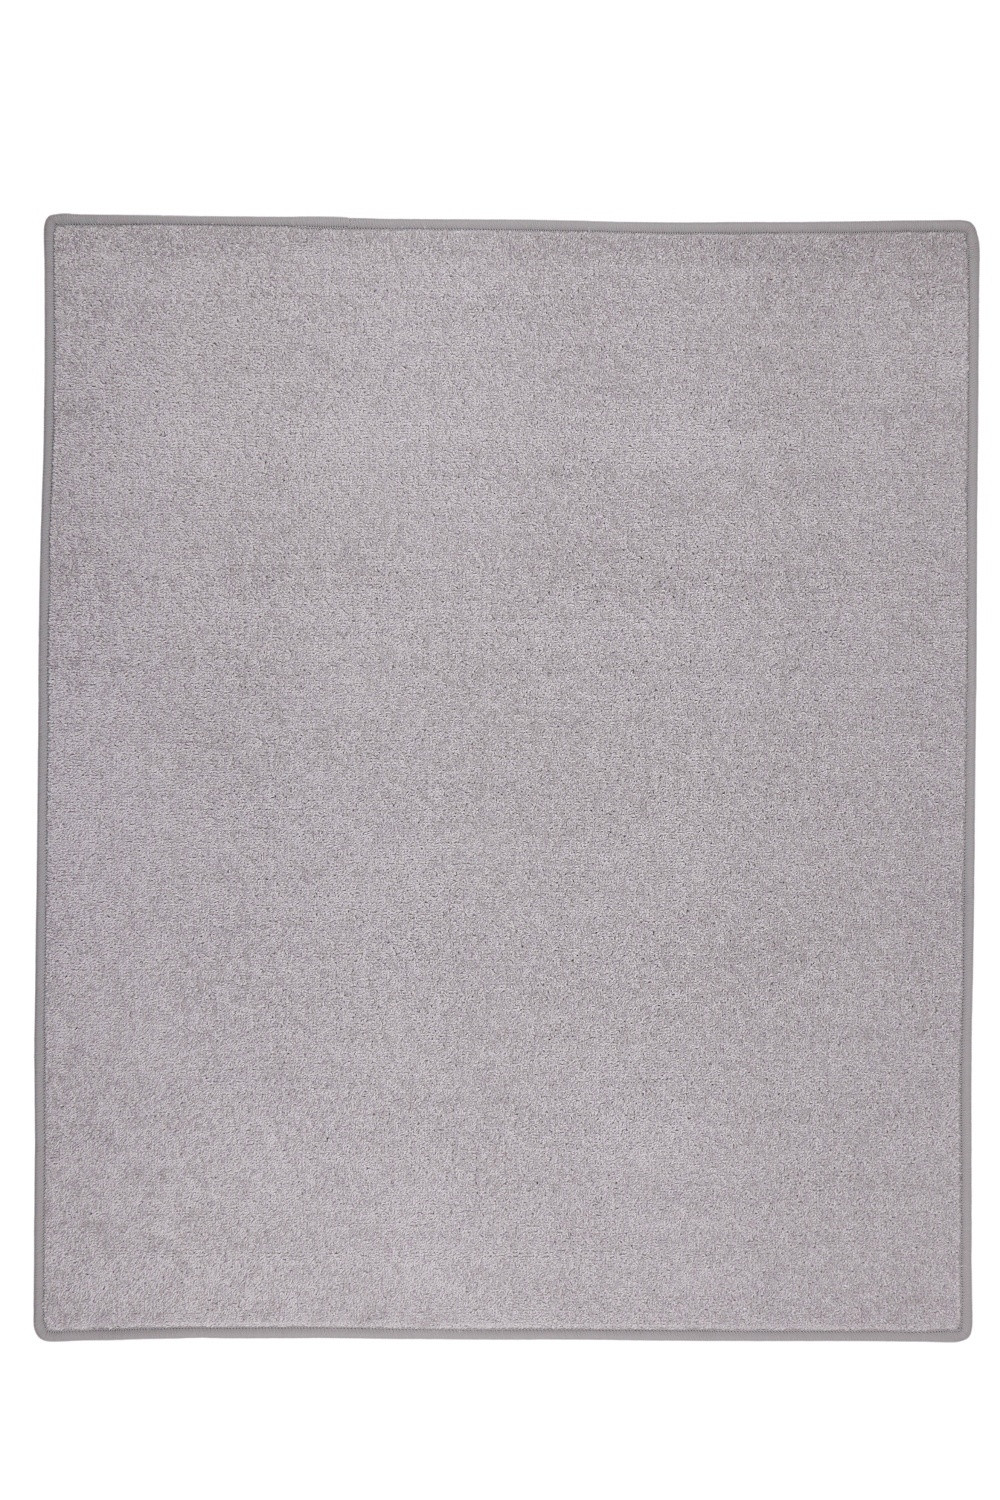 Kusový koberec Eton sivý 73 - 250x350 cm Vopi koberce 